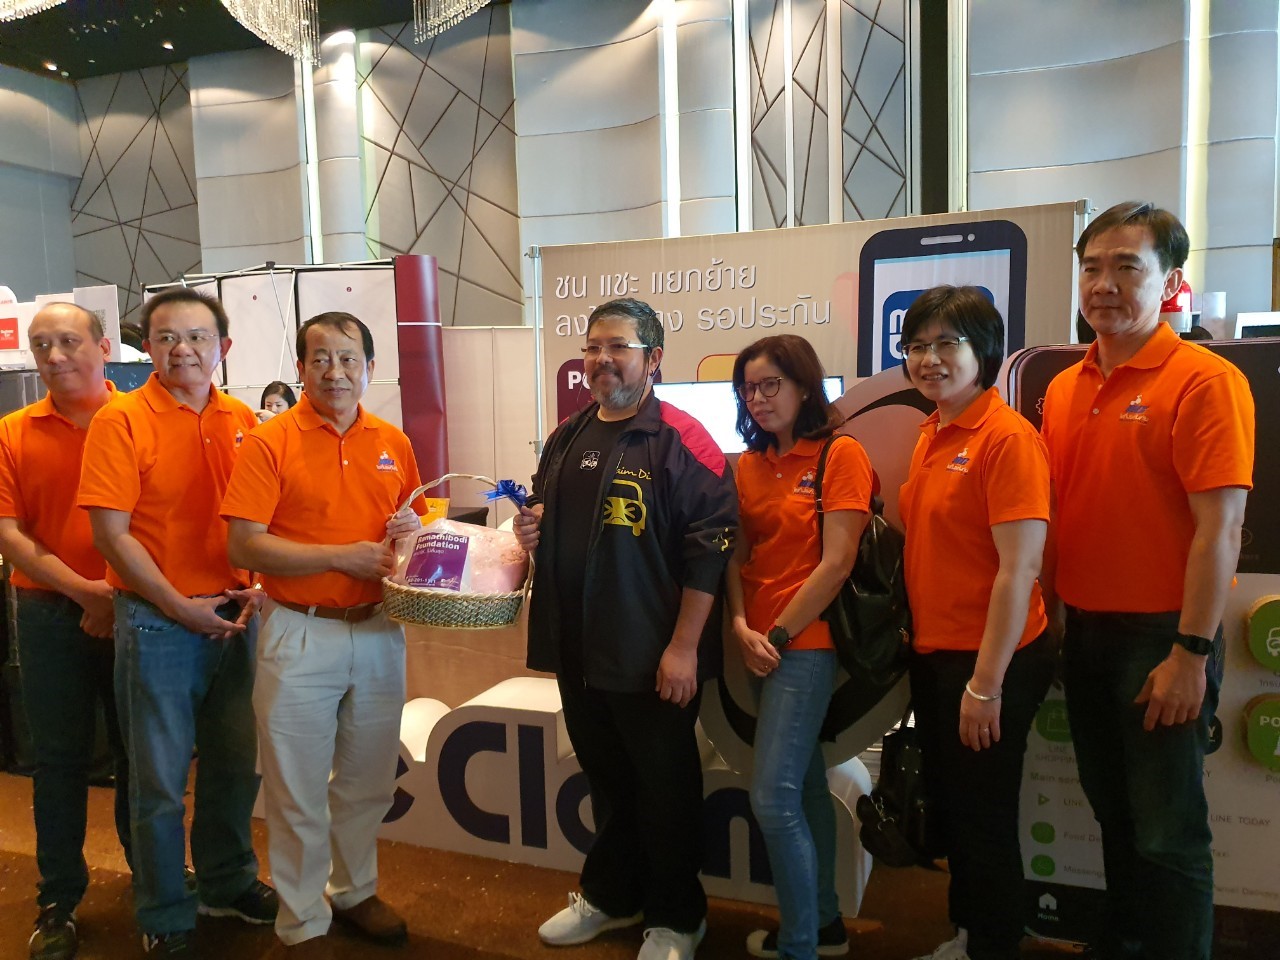 Thailand CIO Forum 2019 Oct 25-27_๑๙๑๑๐๘_0007